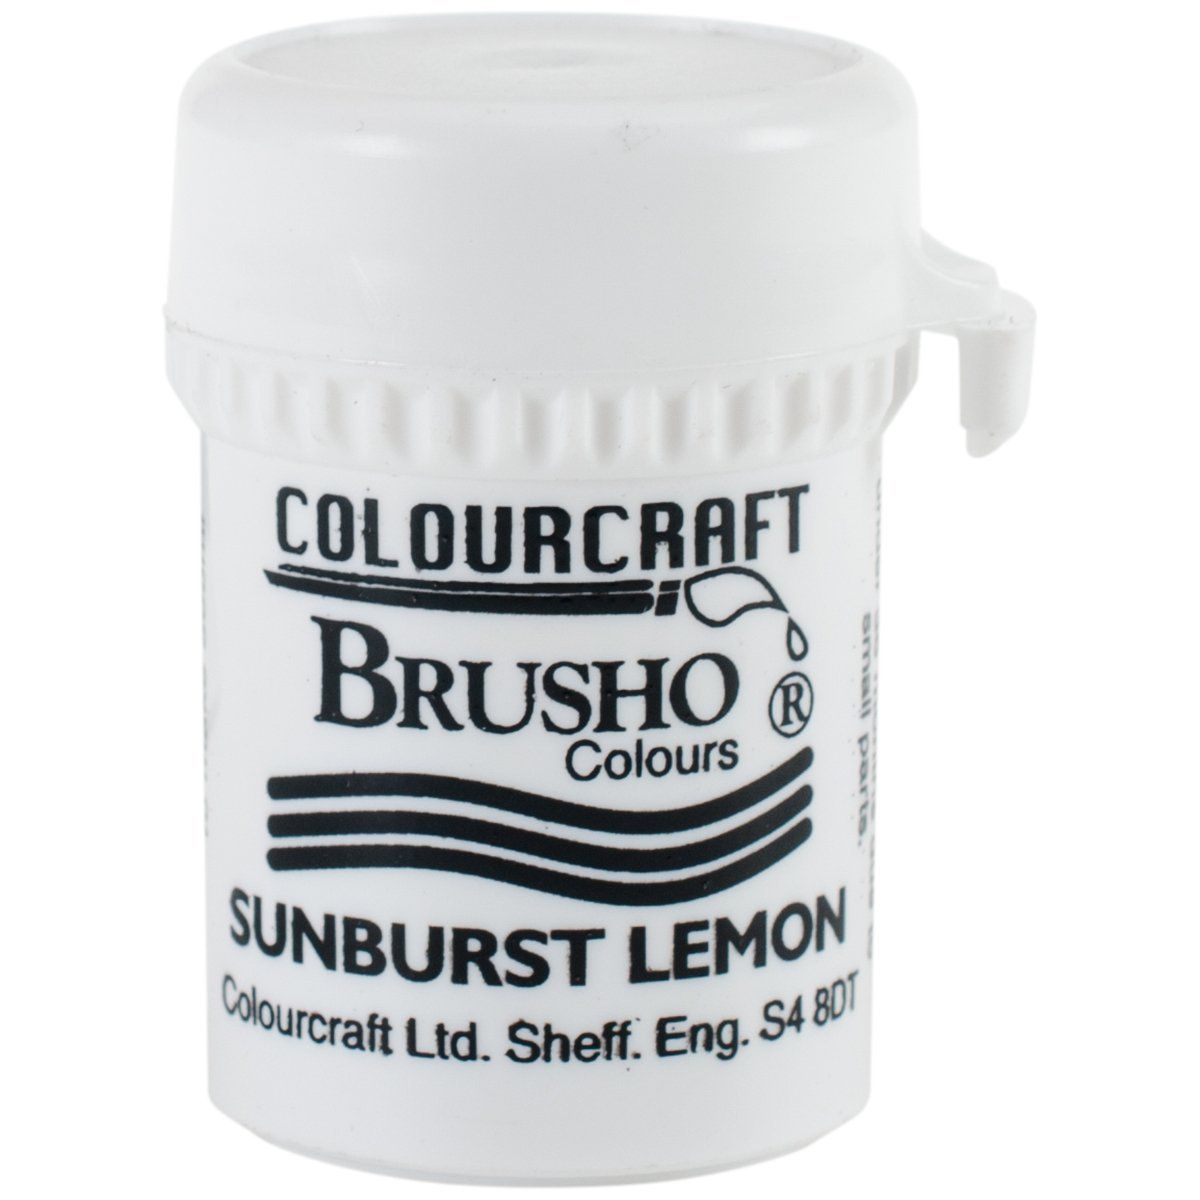 Brusho Crystal Colour - Sunburst Lemon 15 gm